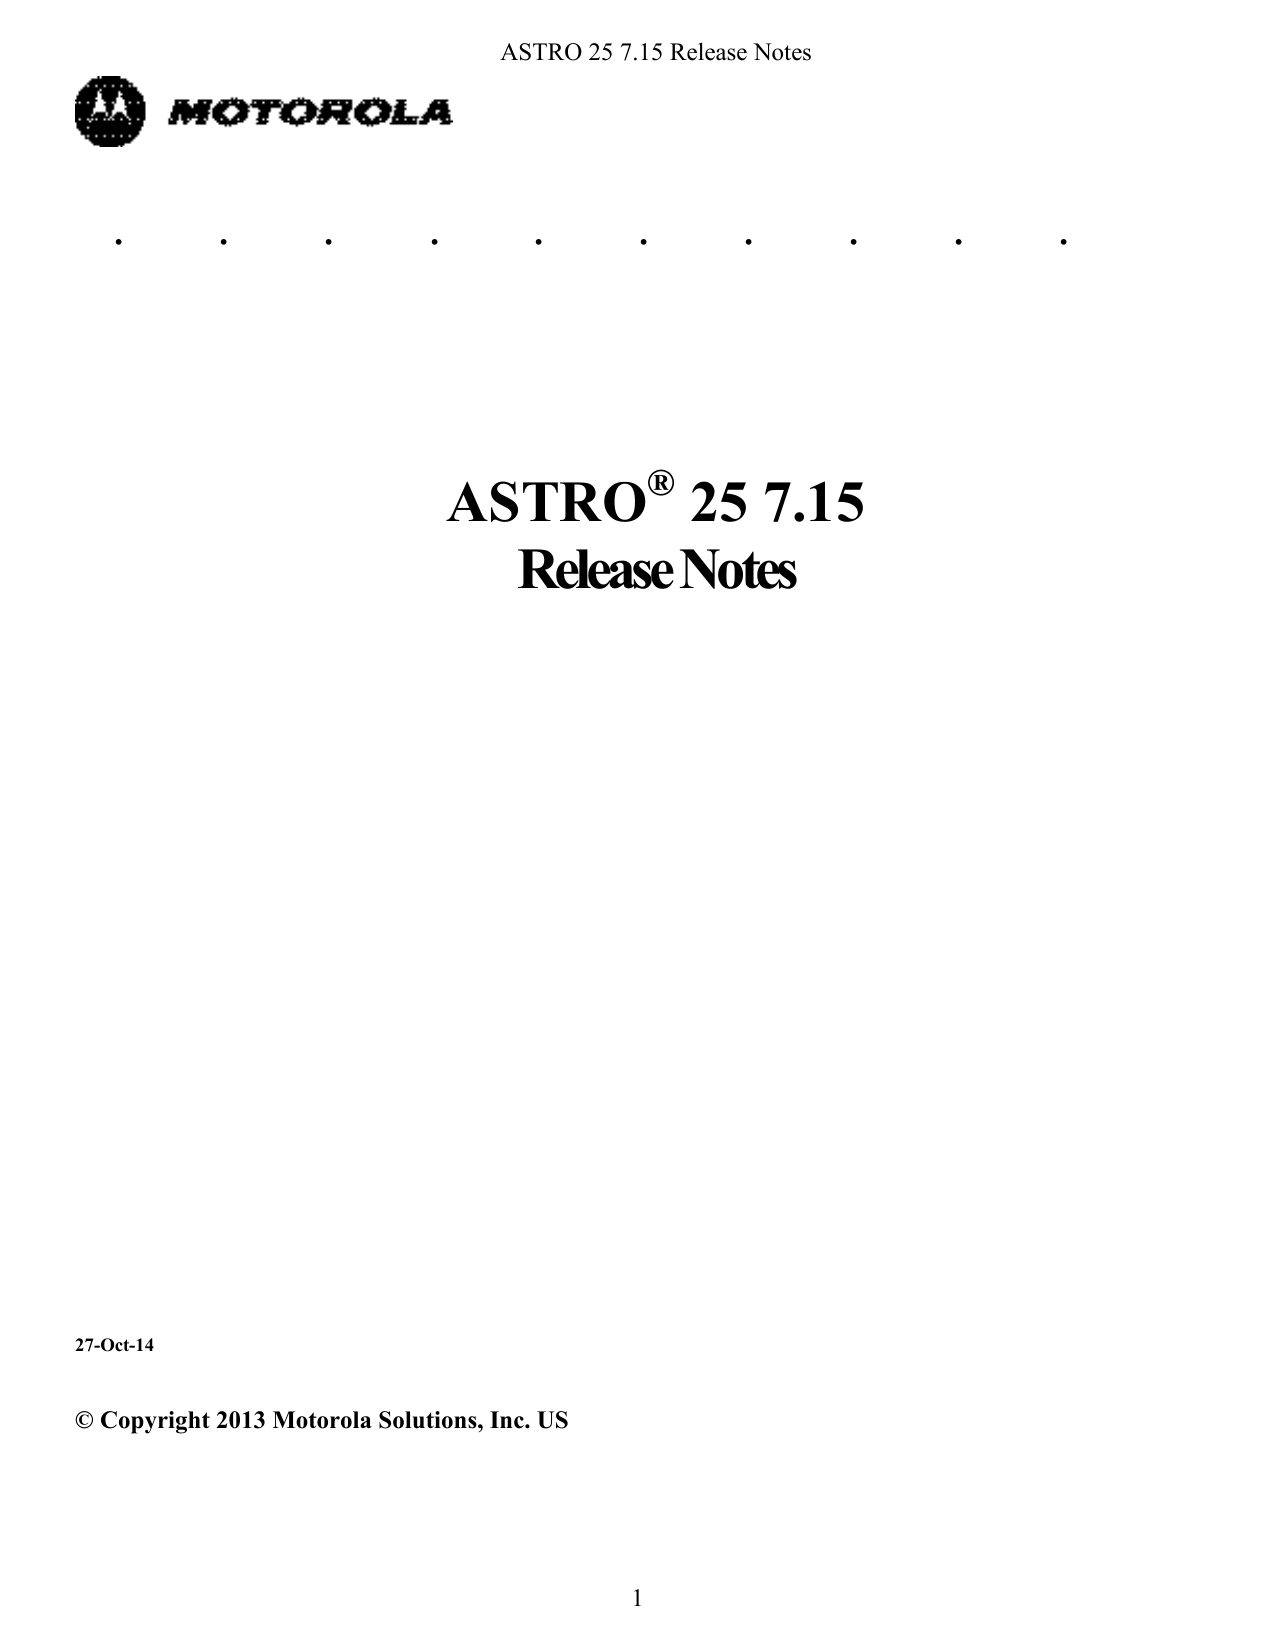 astro 25 portable cps error context 24